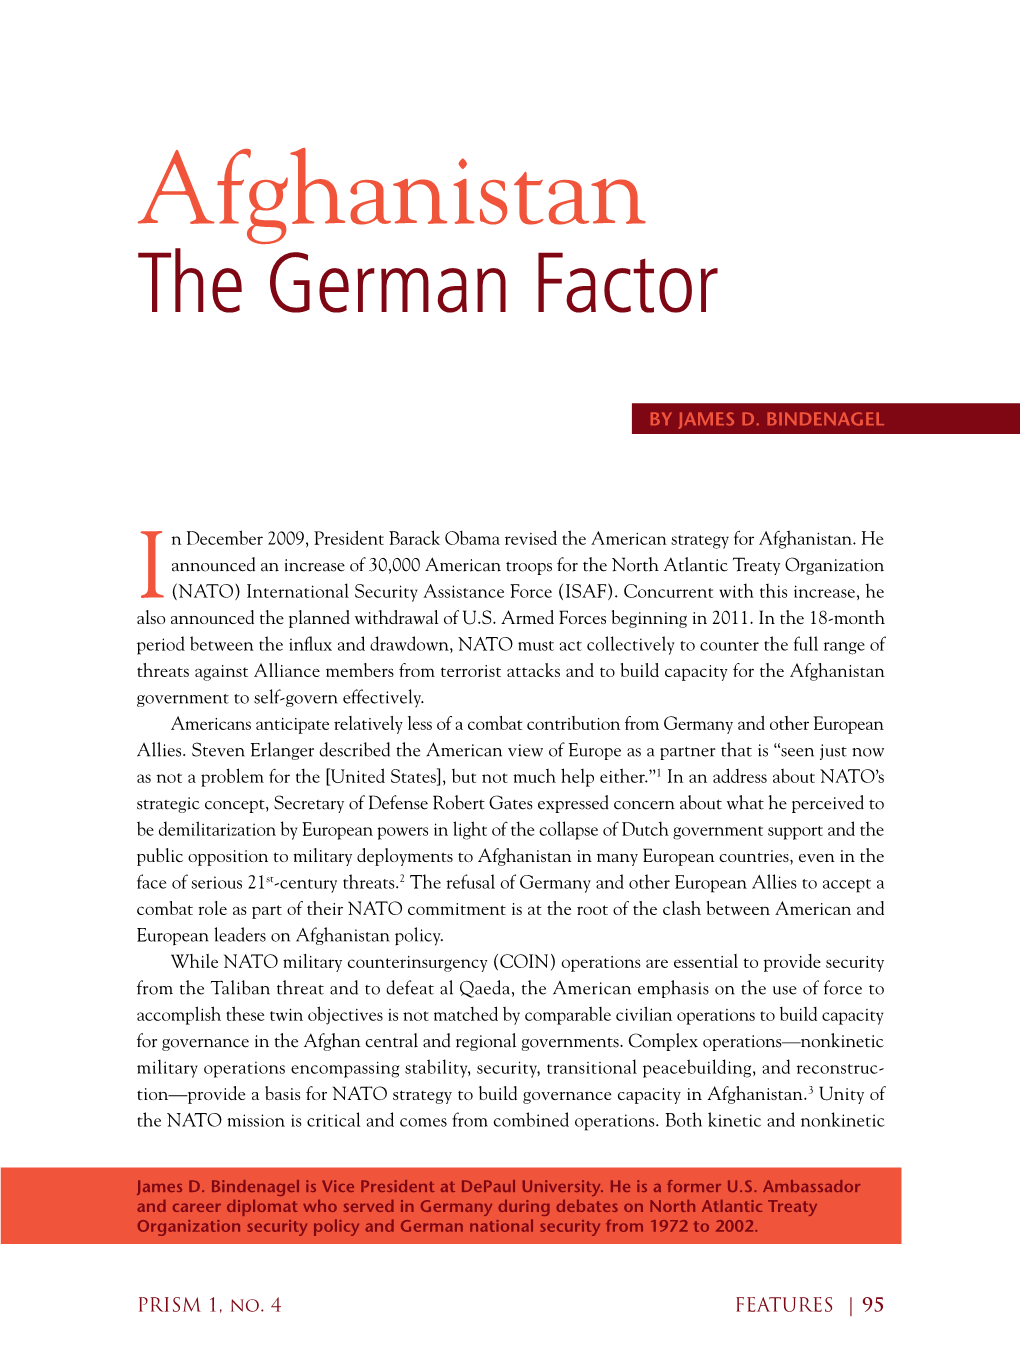 Afghanistan the German Factor